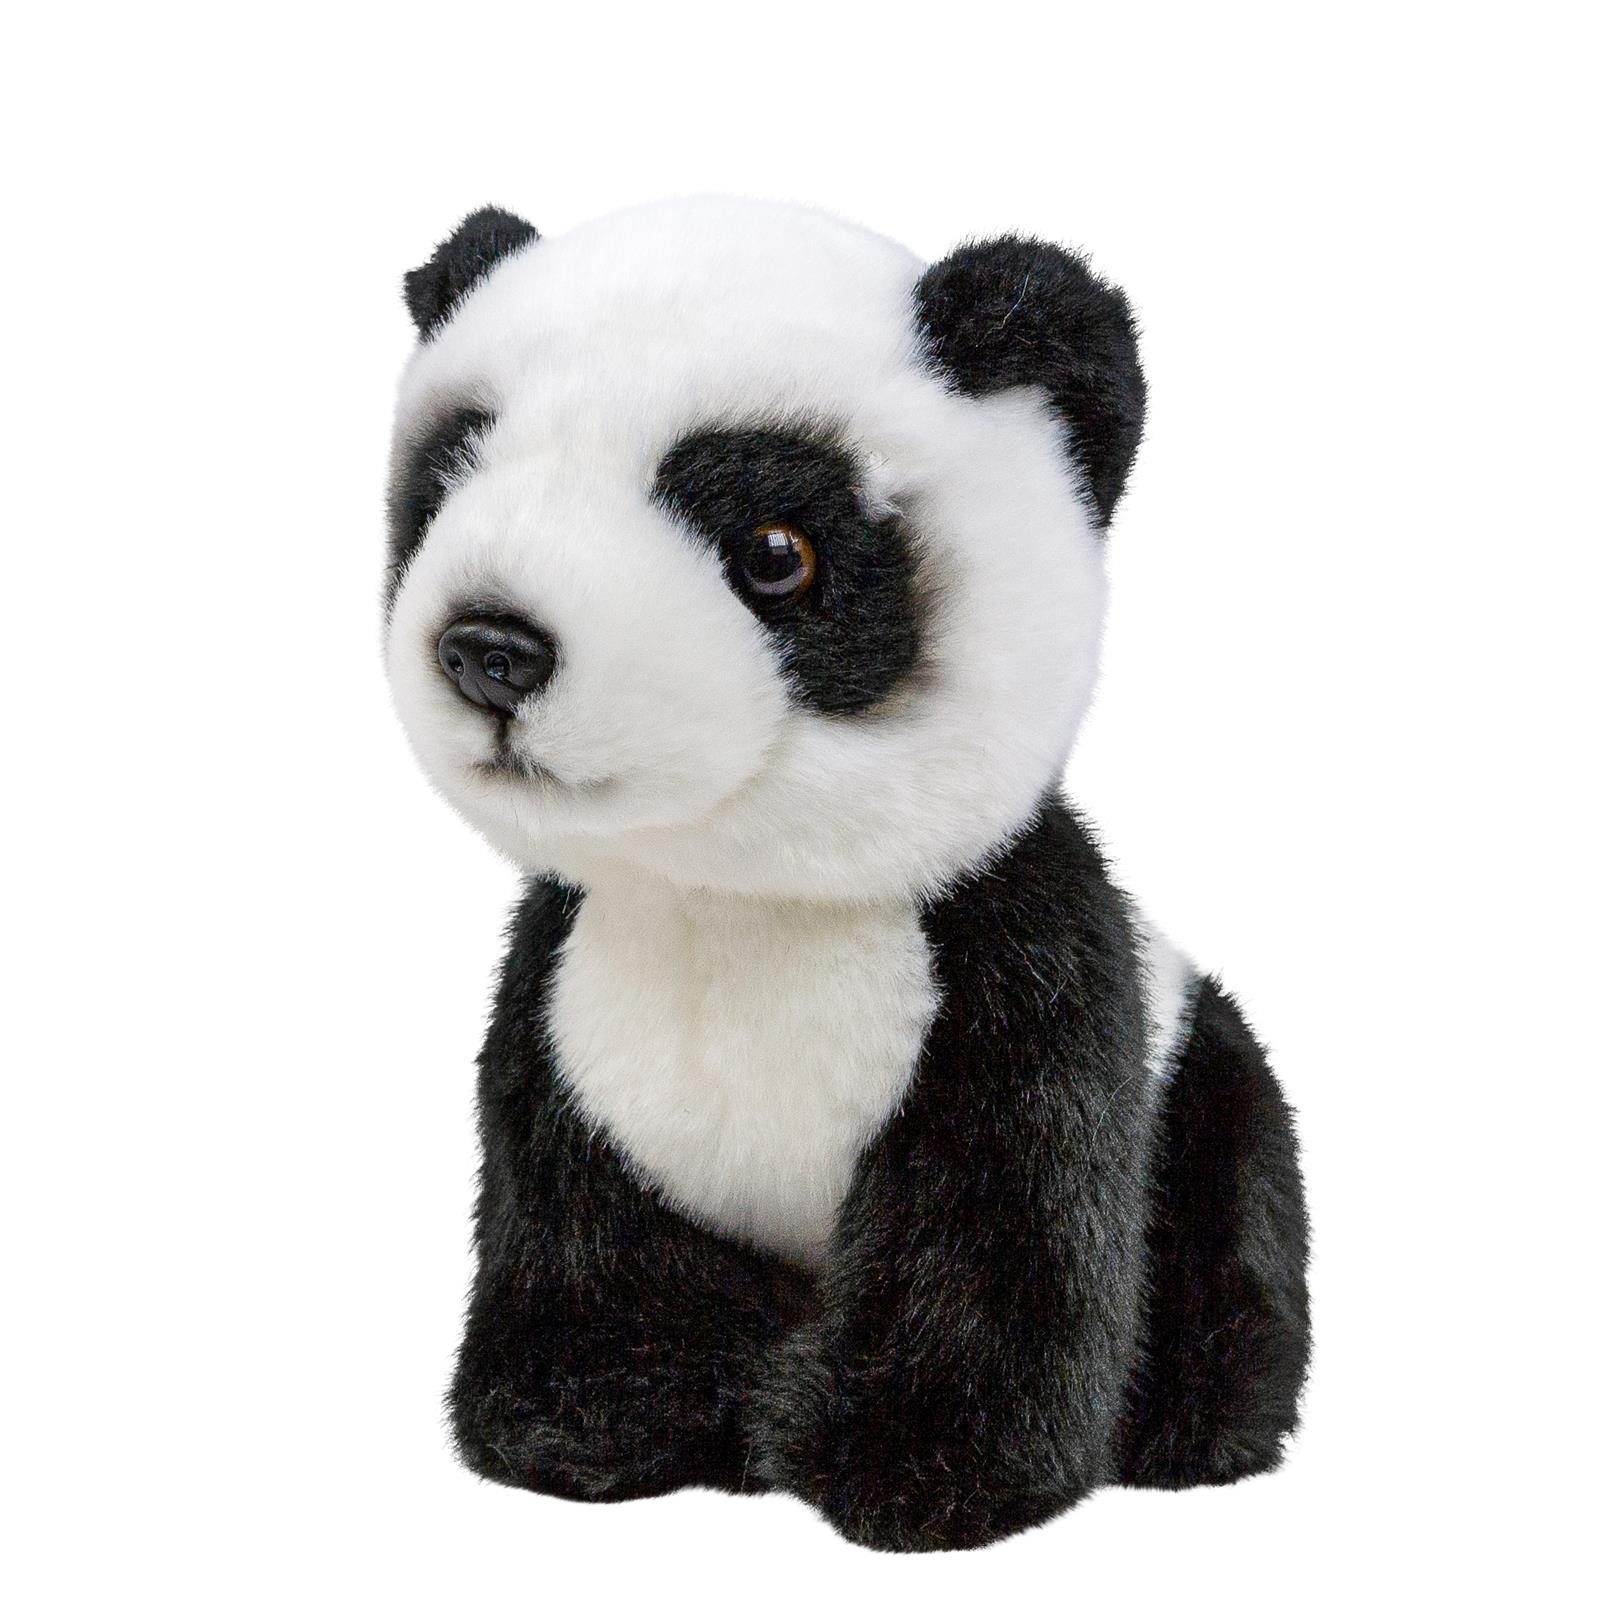 Teddys Rothenburg Kuscheltier Plüschtier Pandabär 18 cm sitzend schwarz-weiß Kuscheltier